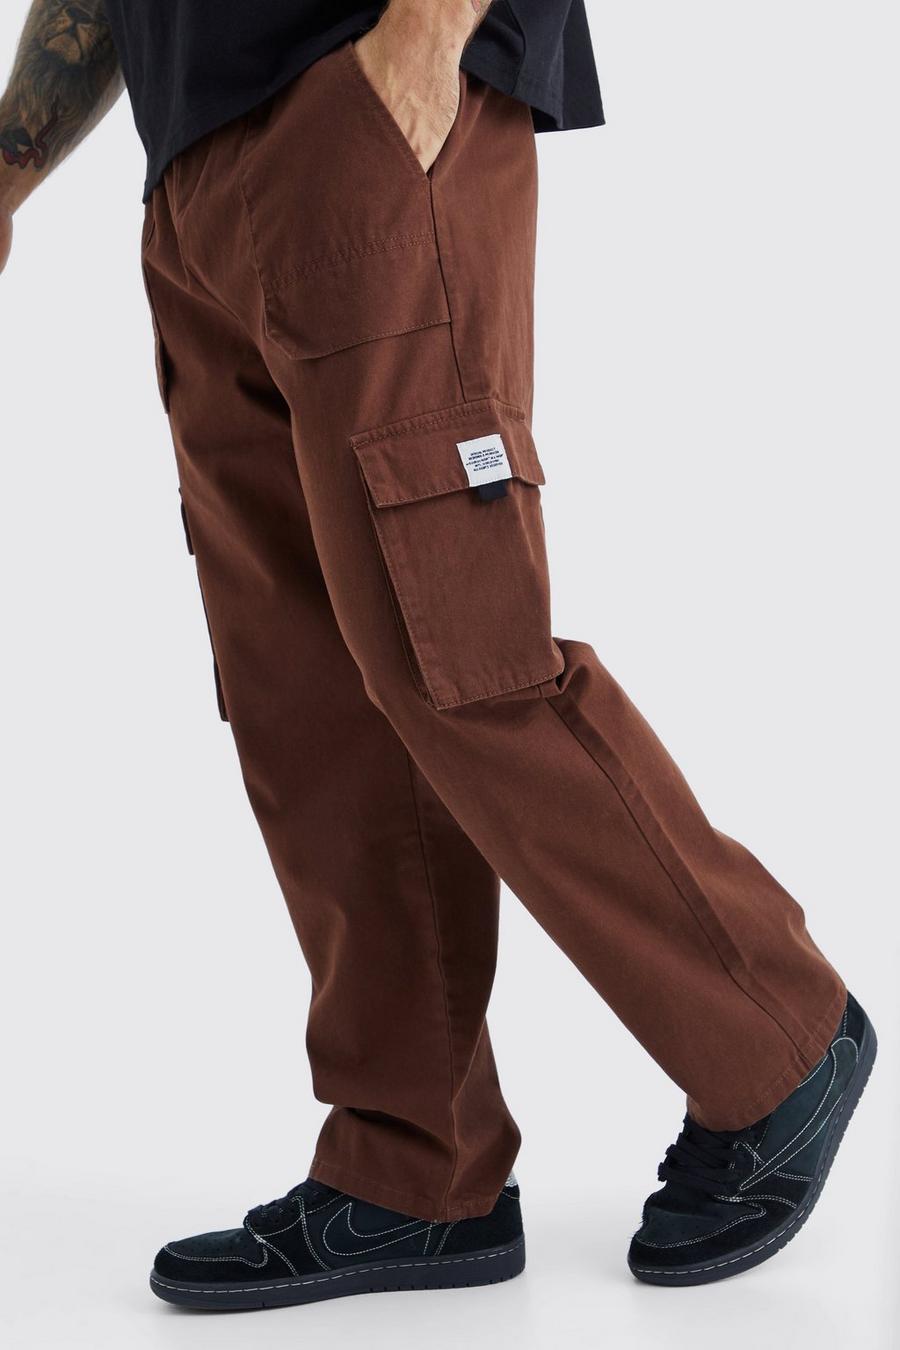 Pantaloni tuta Cargo rilassati con vita elasticizzata e fibbia, Chocolate marrón